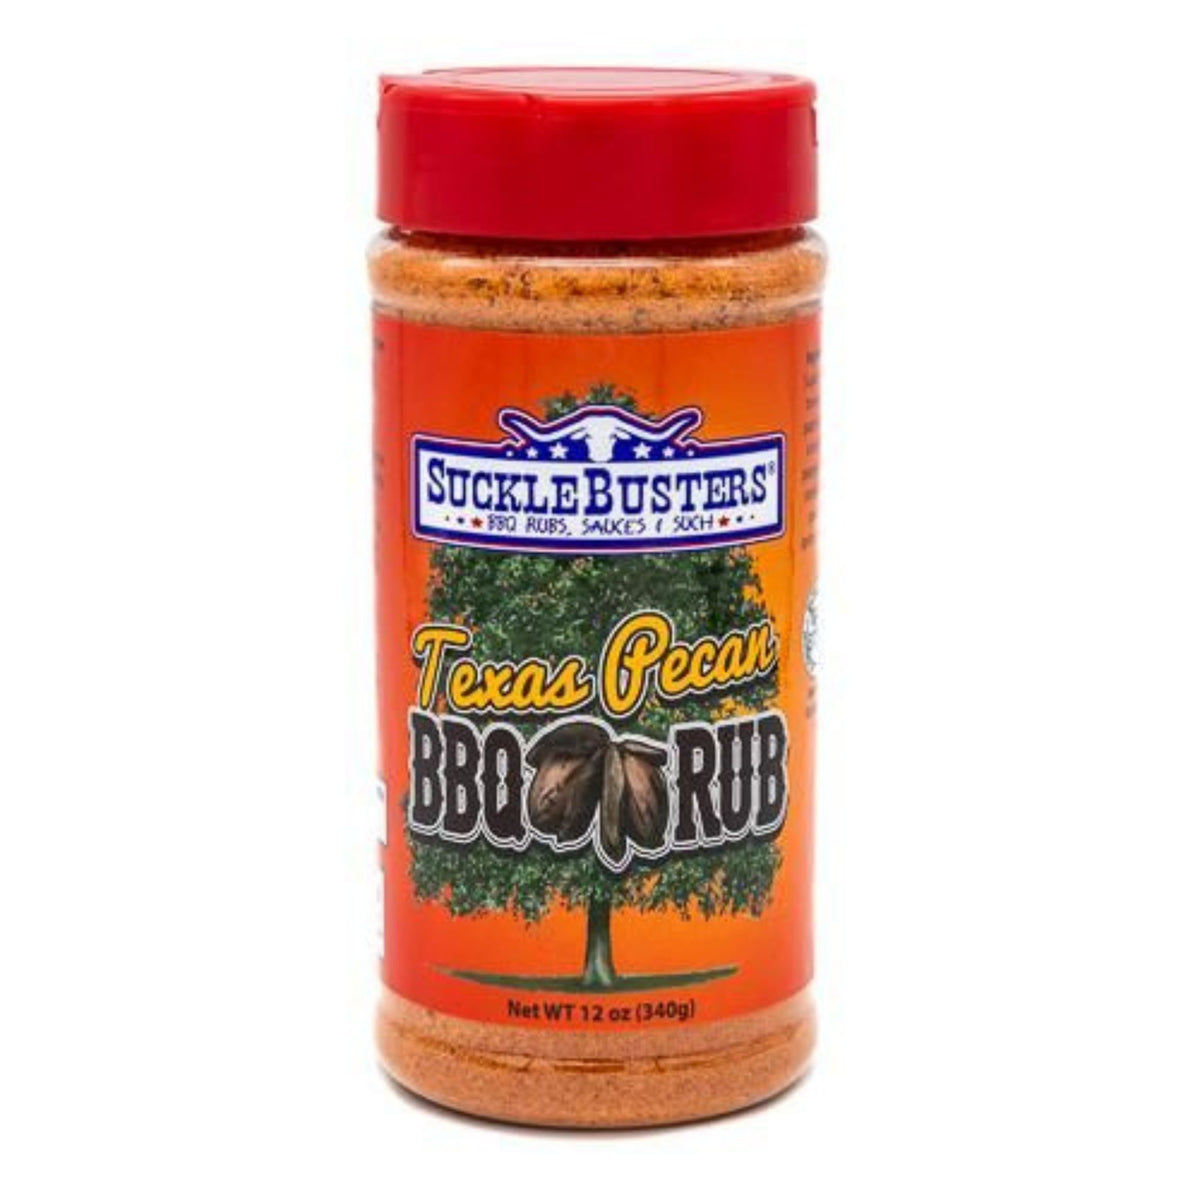 Sucklebusters | Texas Pecan BBQ Rub - Dal pollo alla polenta